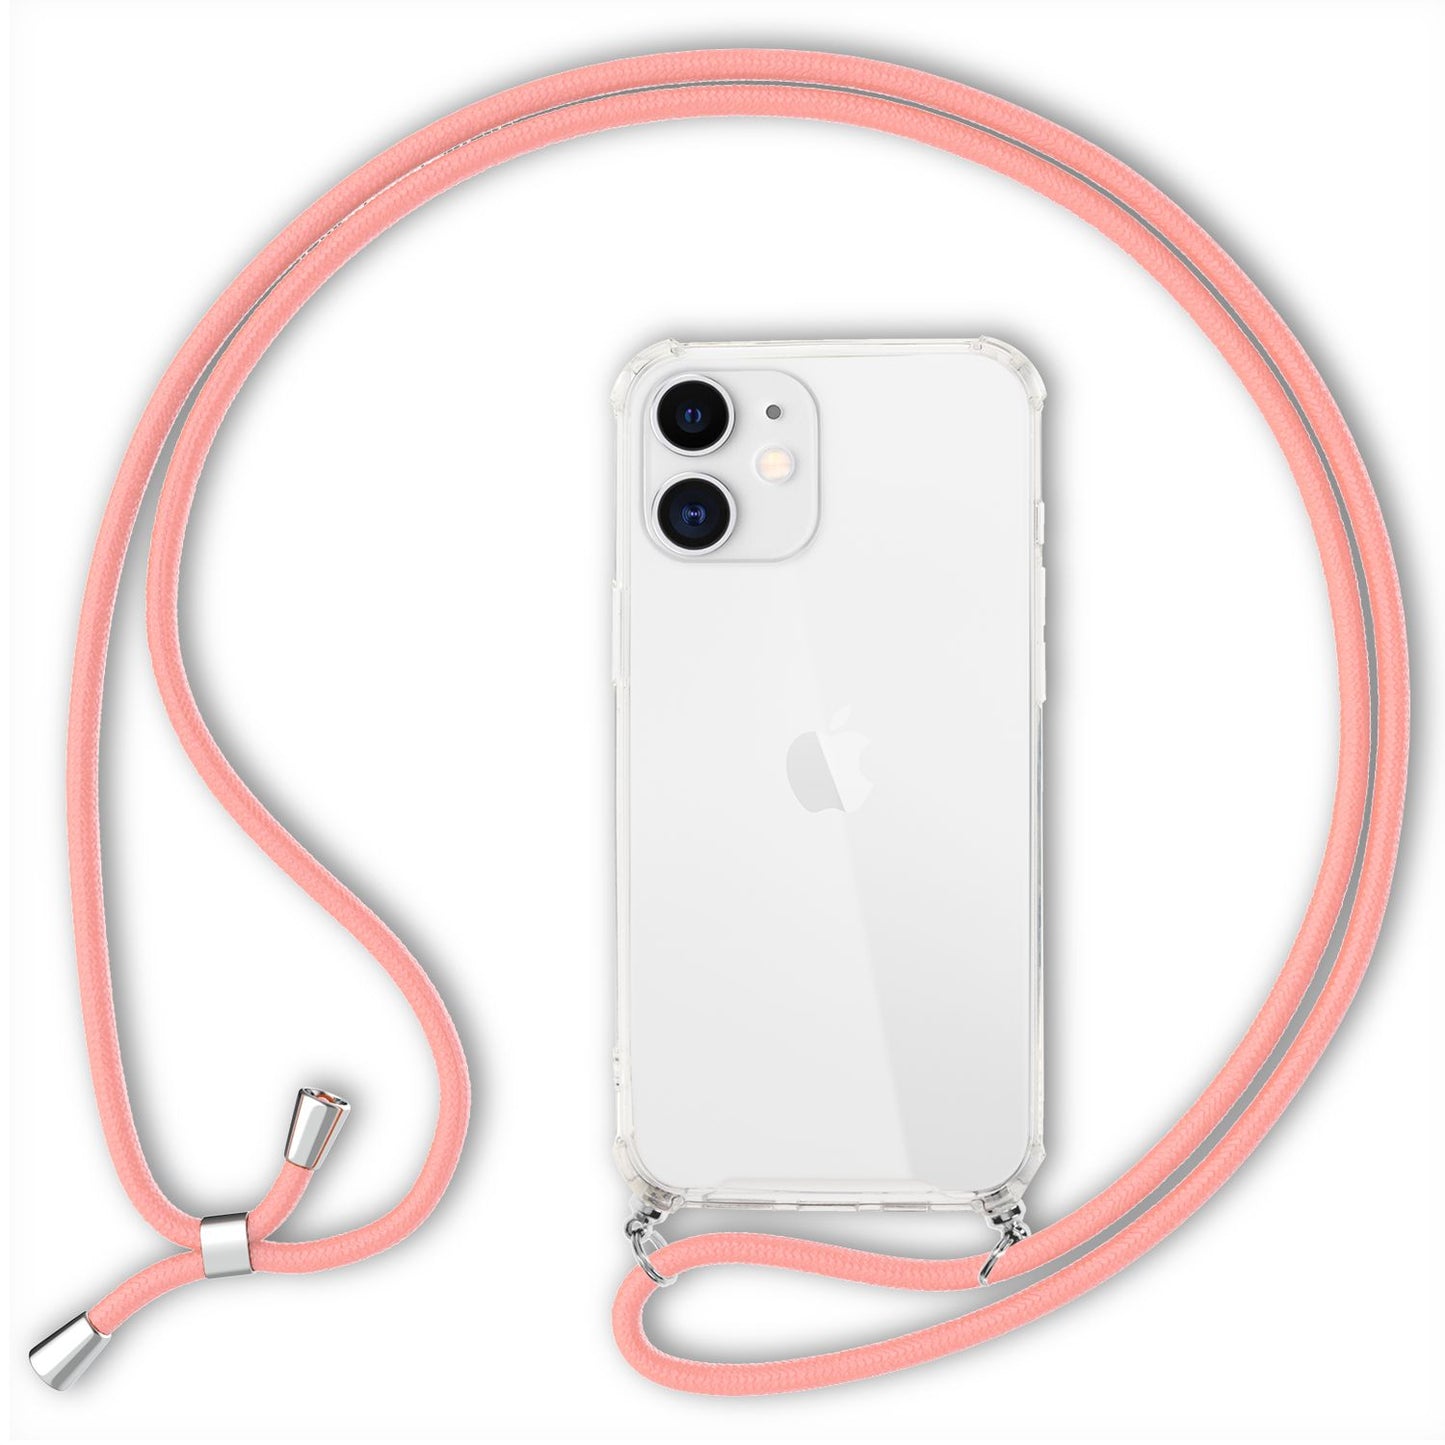 NALIA Handy Hülle mit Kette für iPhone 12 mini, Hard Case Kordel Cover Schale